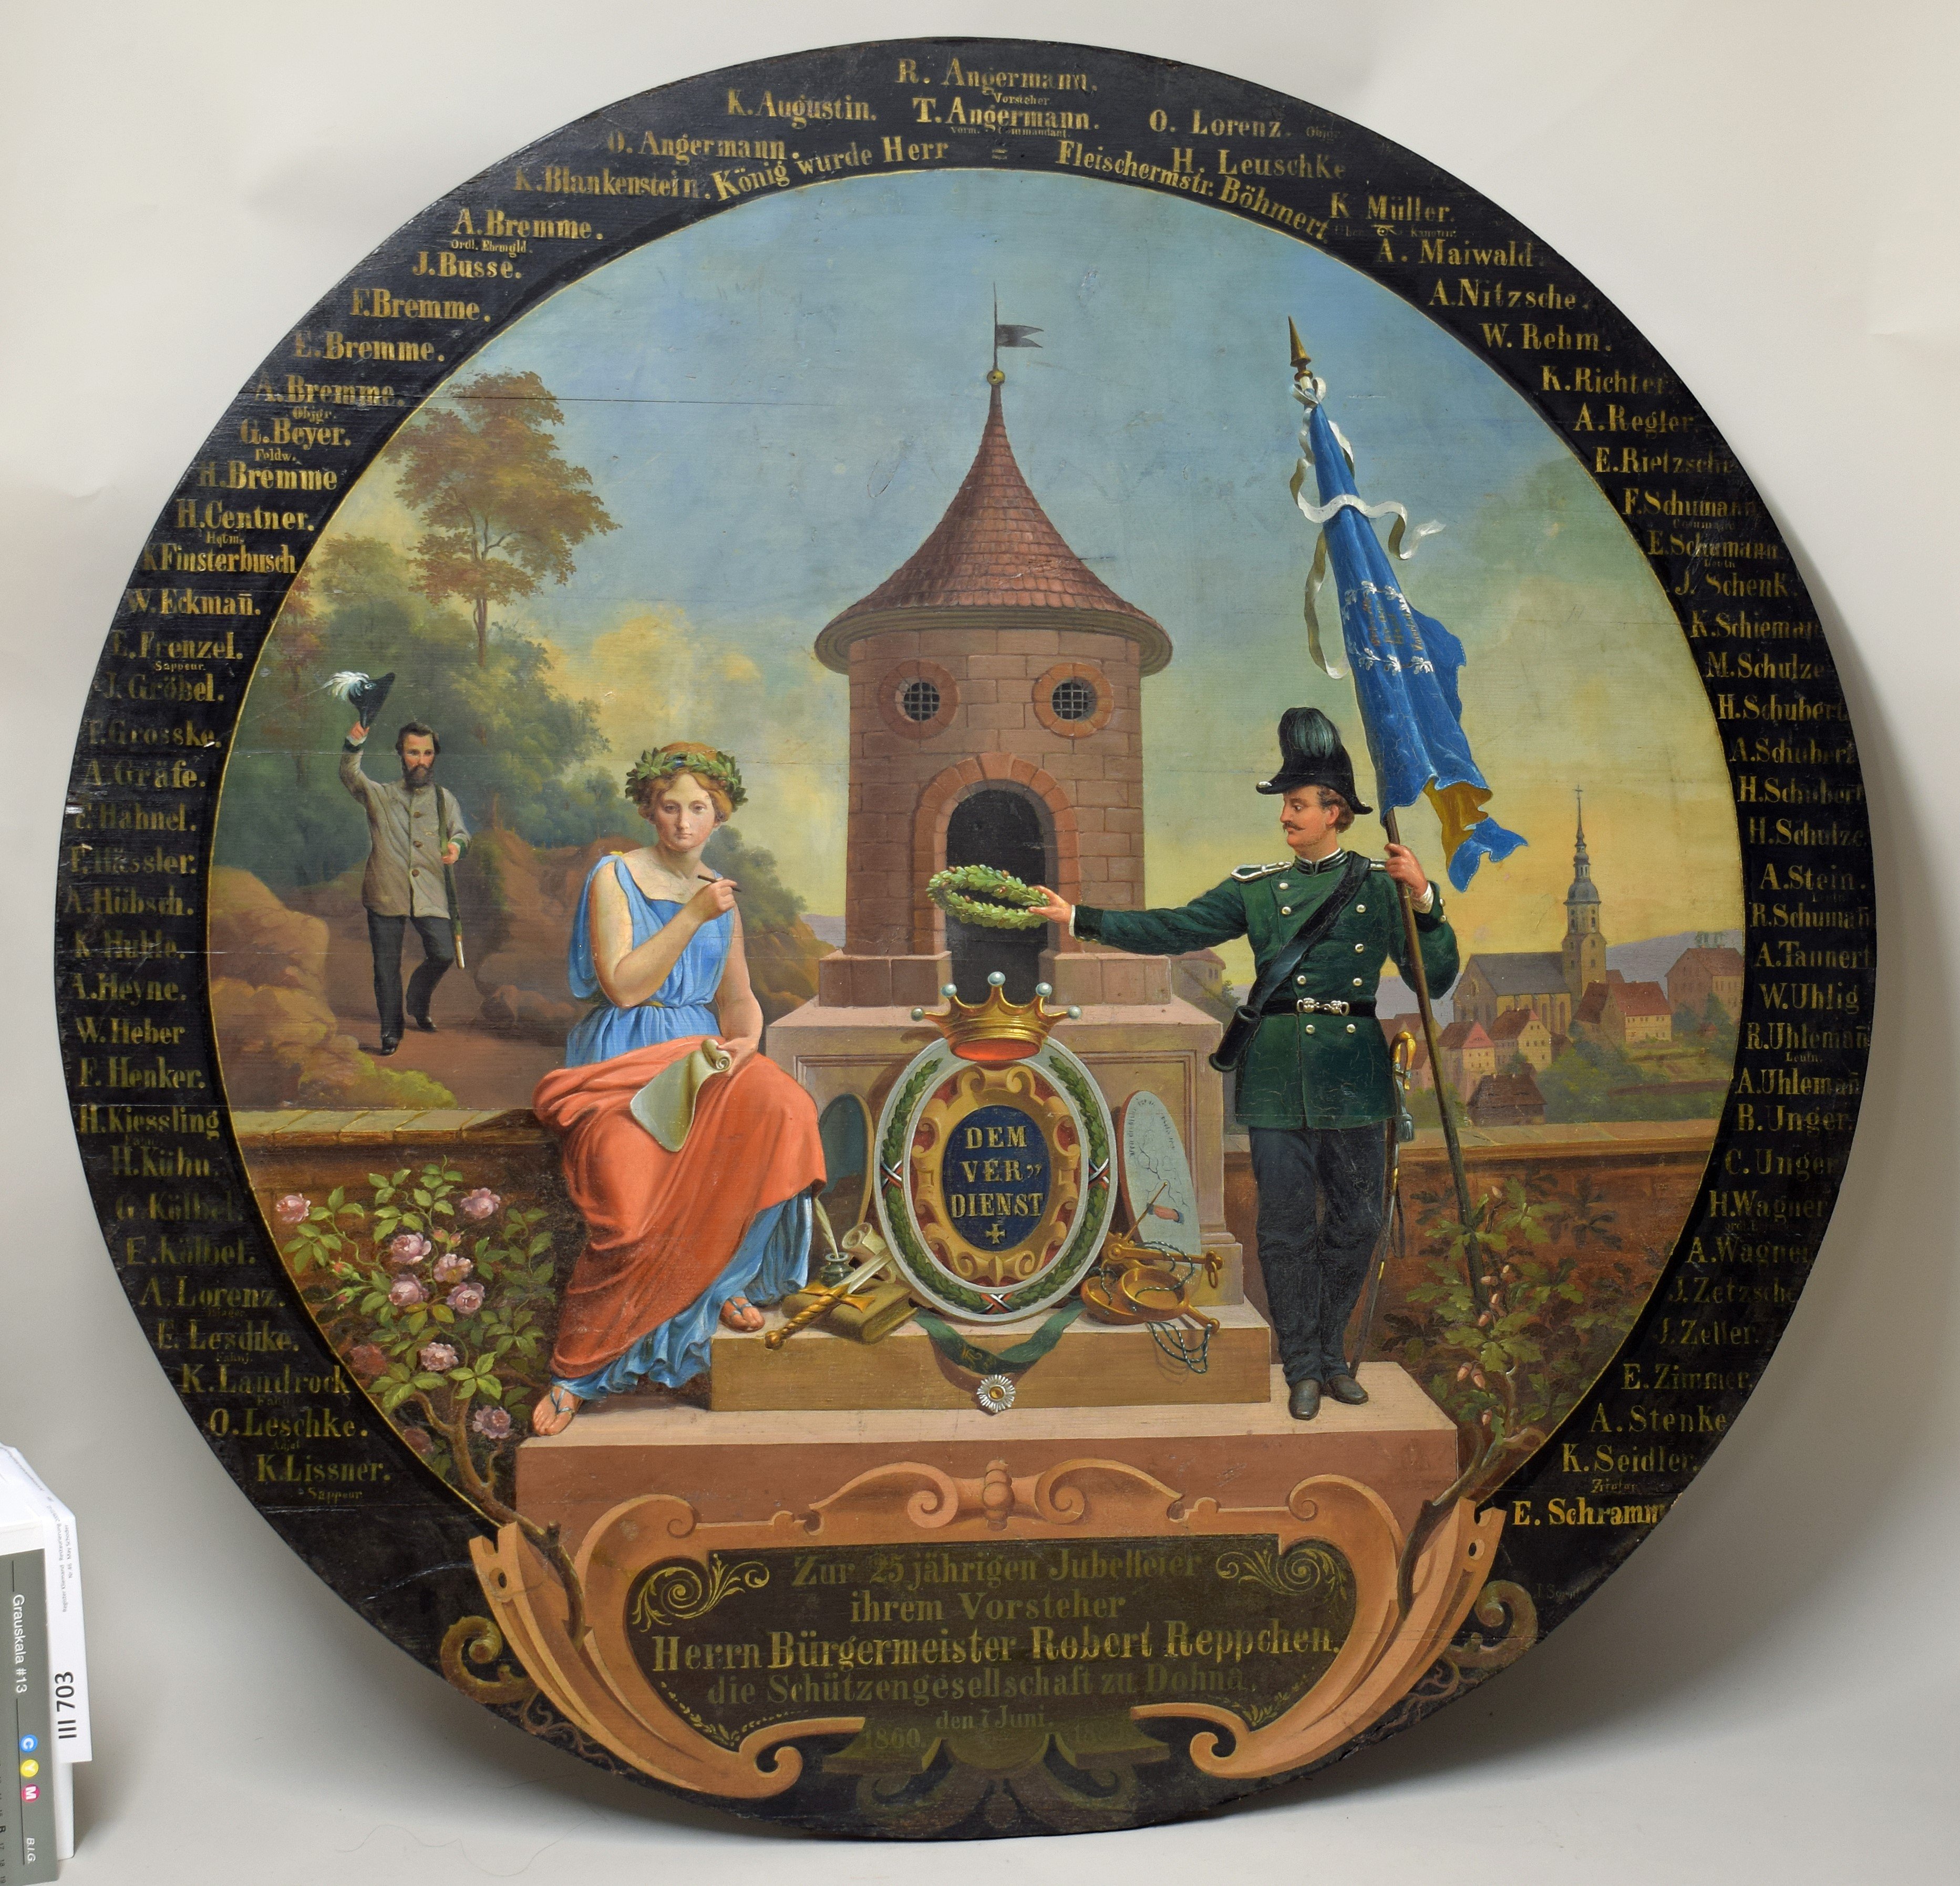 Jubelscheibe "Zur 25-jährigen Jubelfeier Ihrem Vorsteher Herrn Bürgermeister Robert Reppchen" 1885 (Heimatmuseum Dohna CC BY-NC-SA)